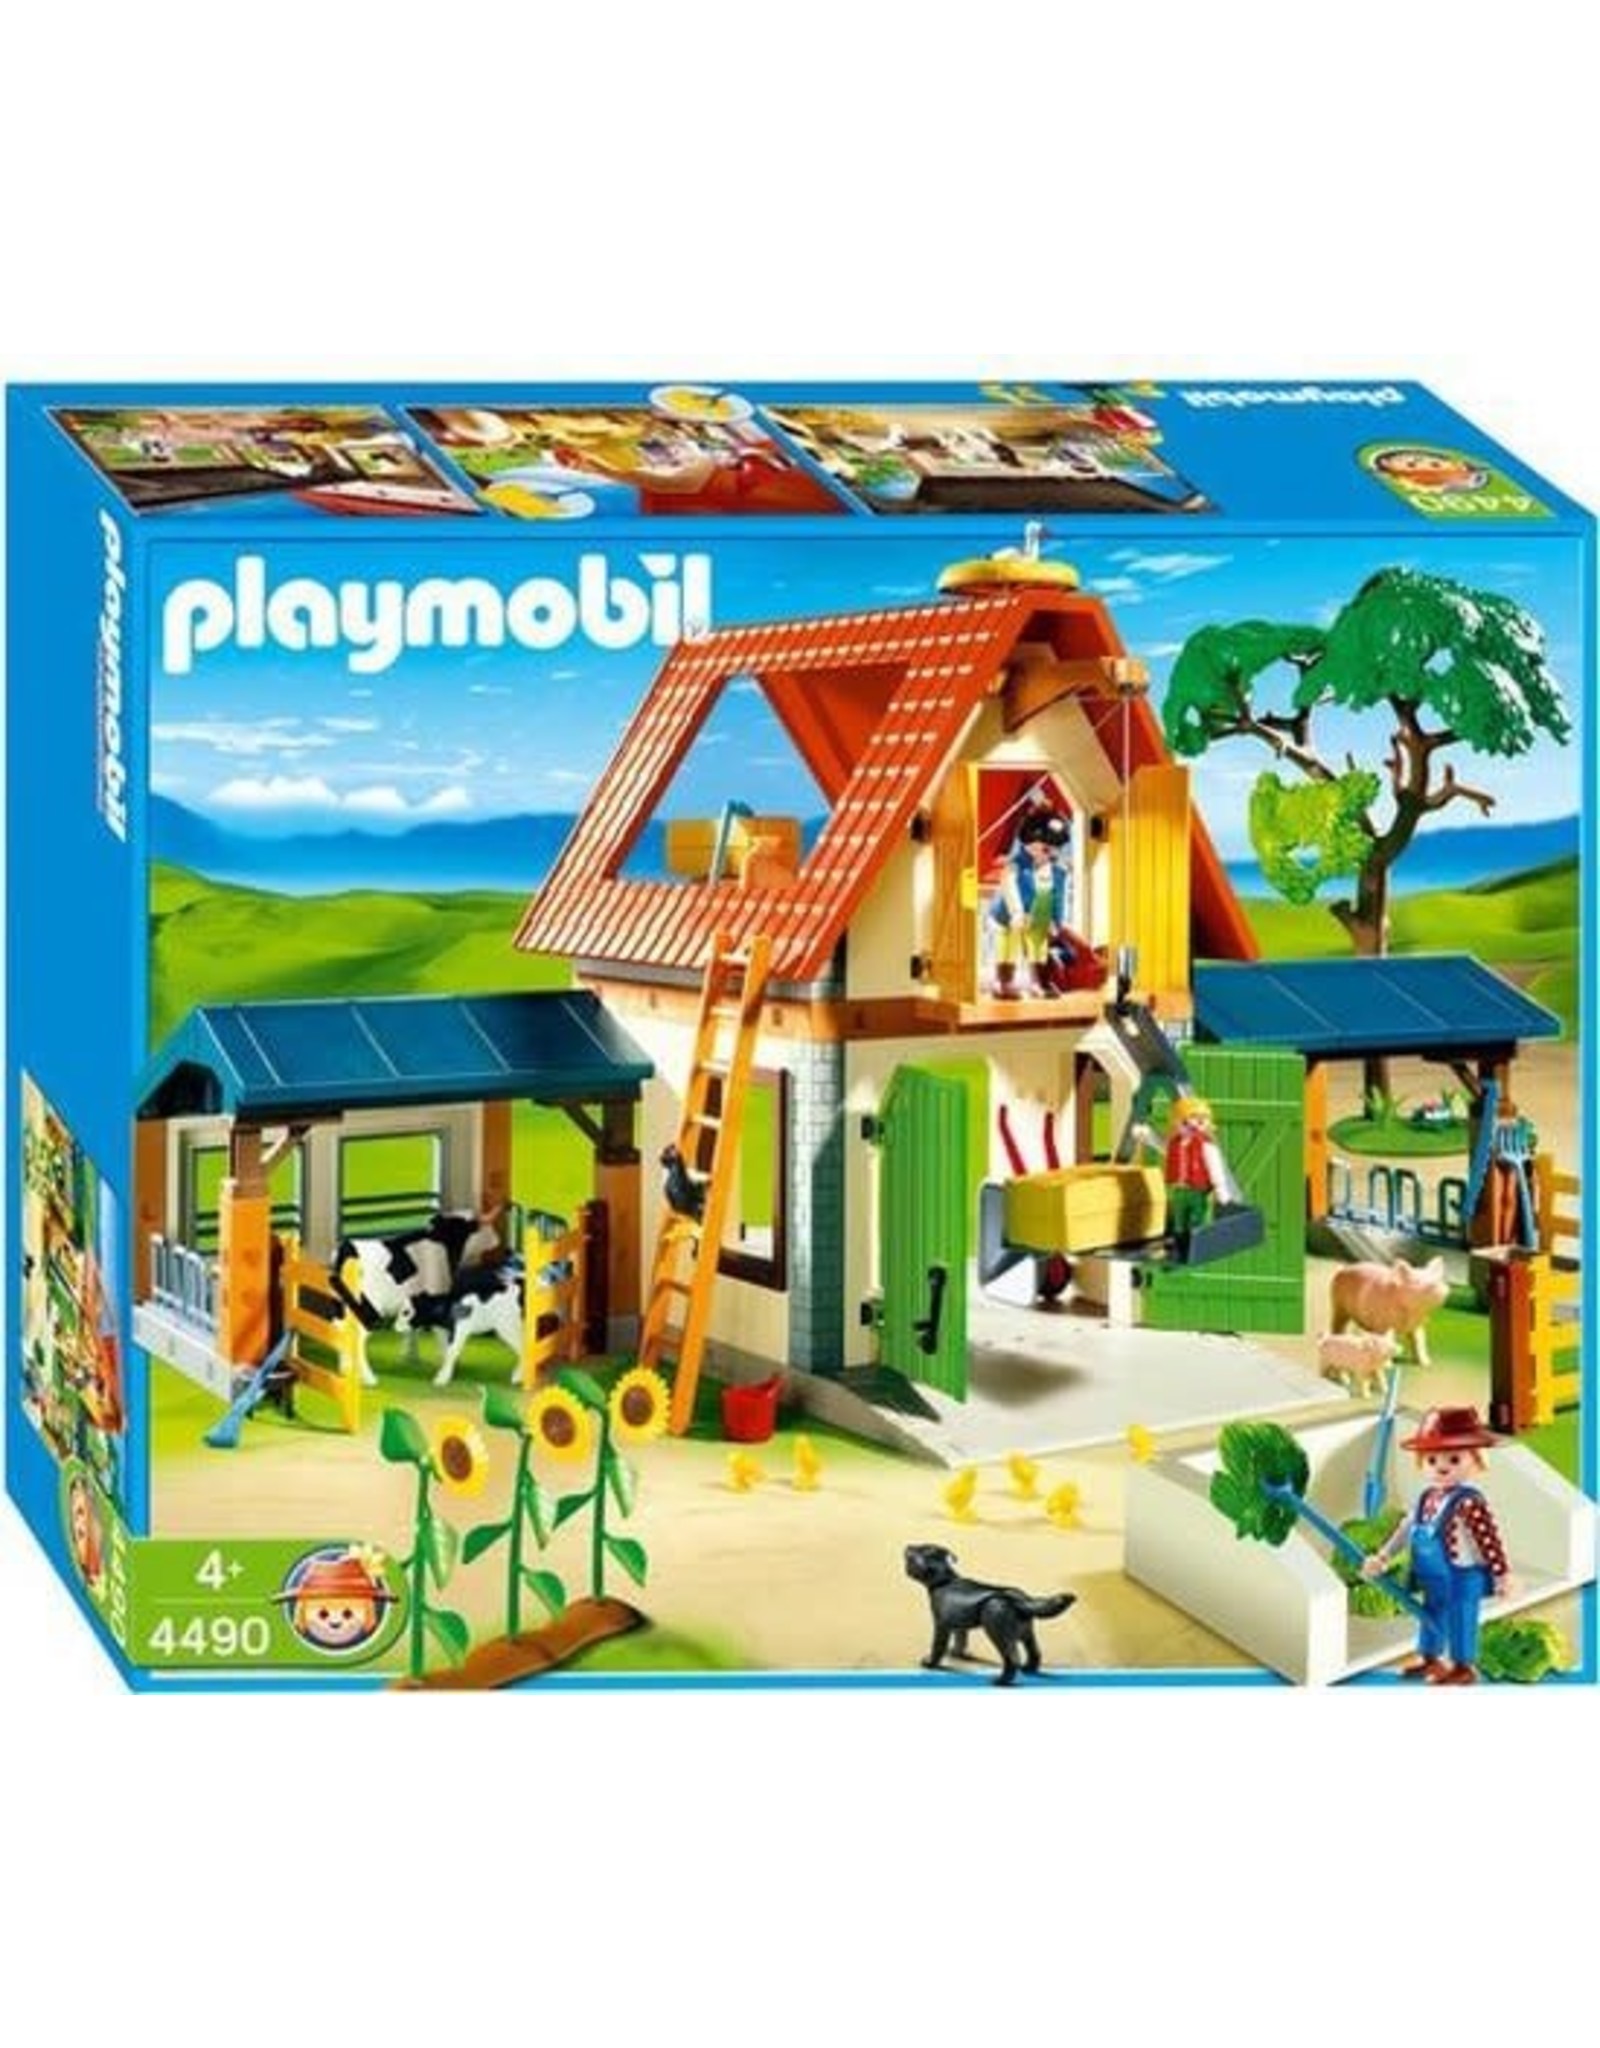 Playmobil Playmobil 4490 Grote Boerderij